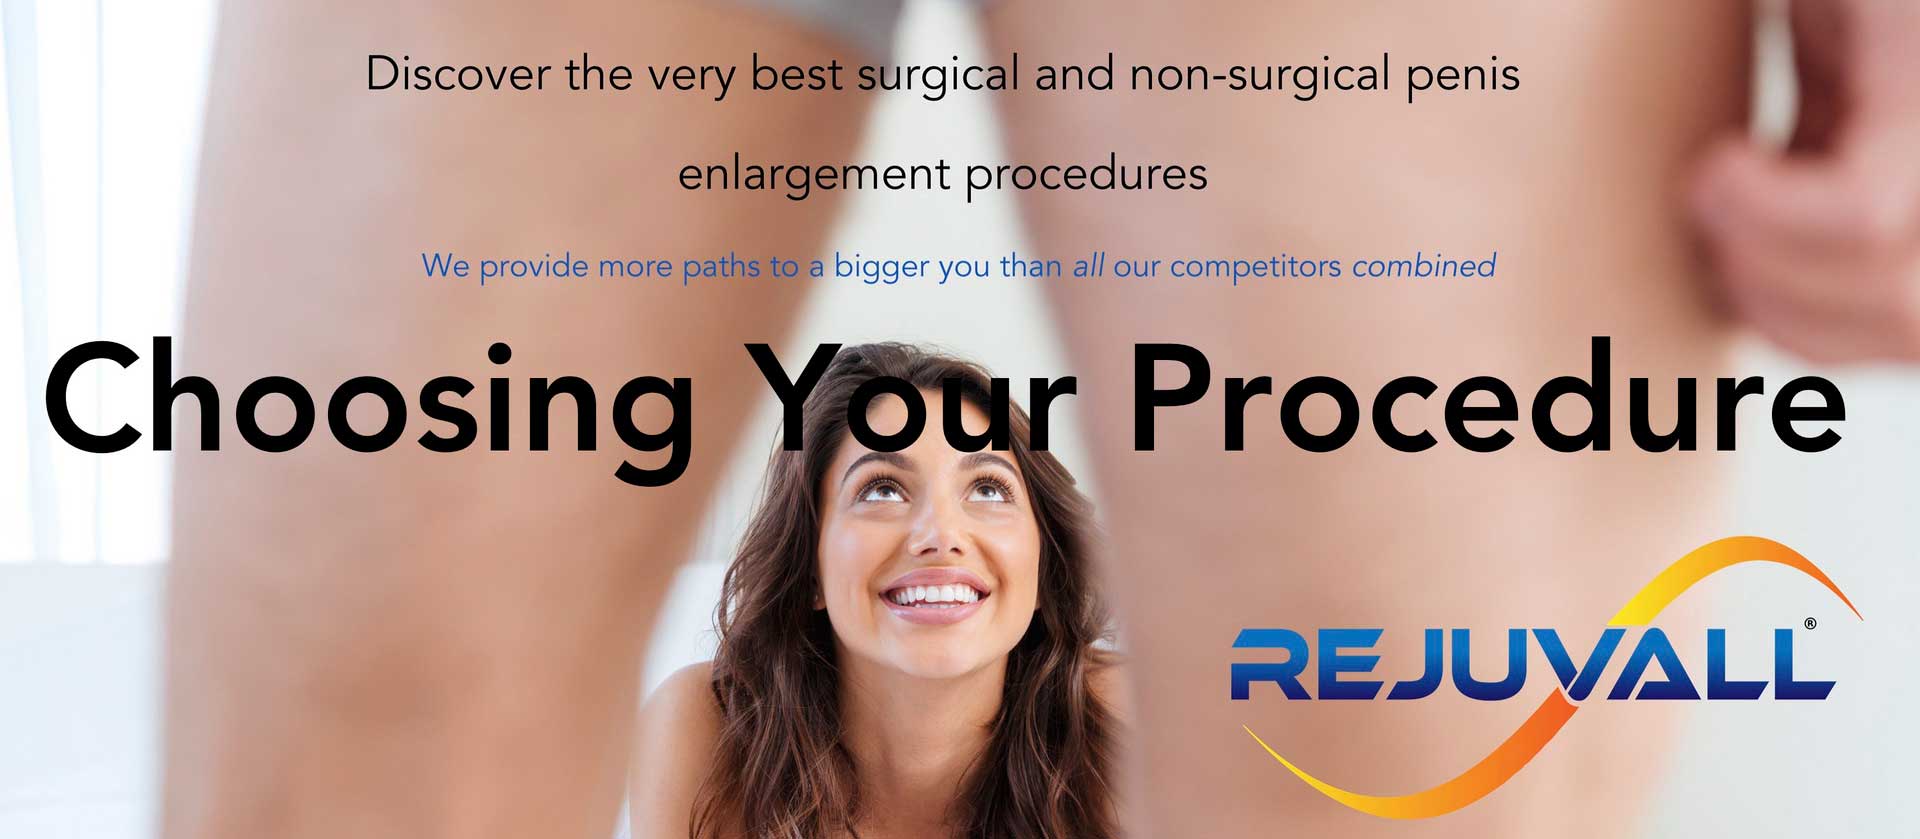 Best Enlargement Surgery Options image